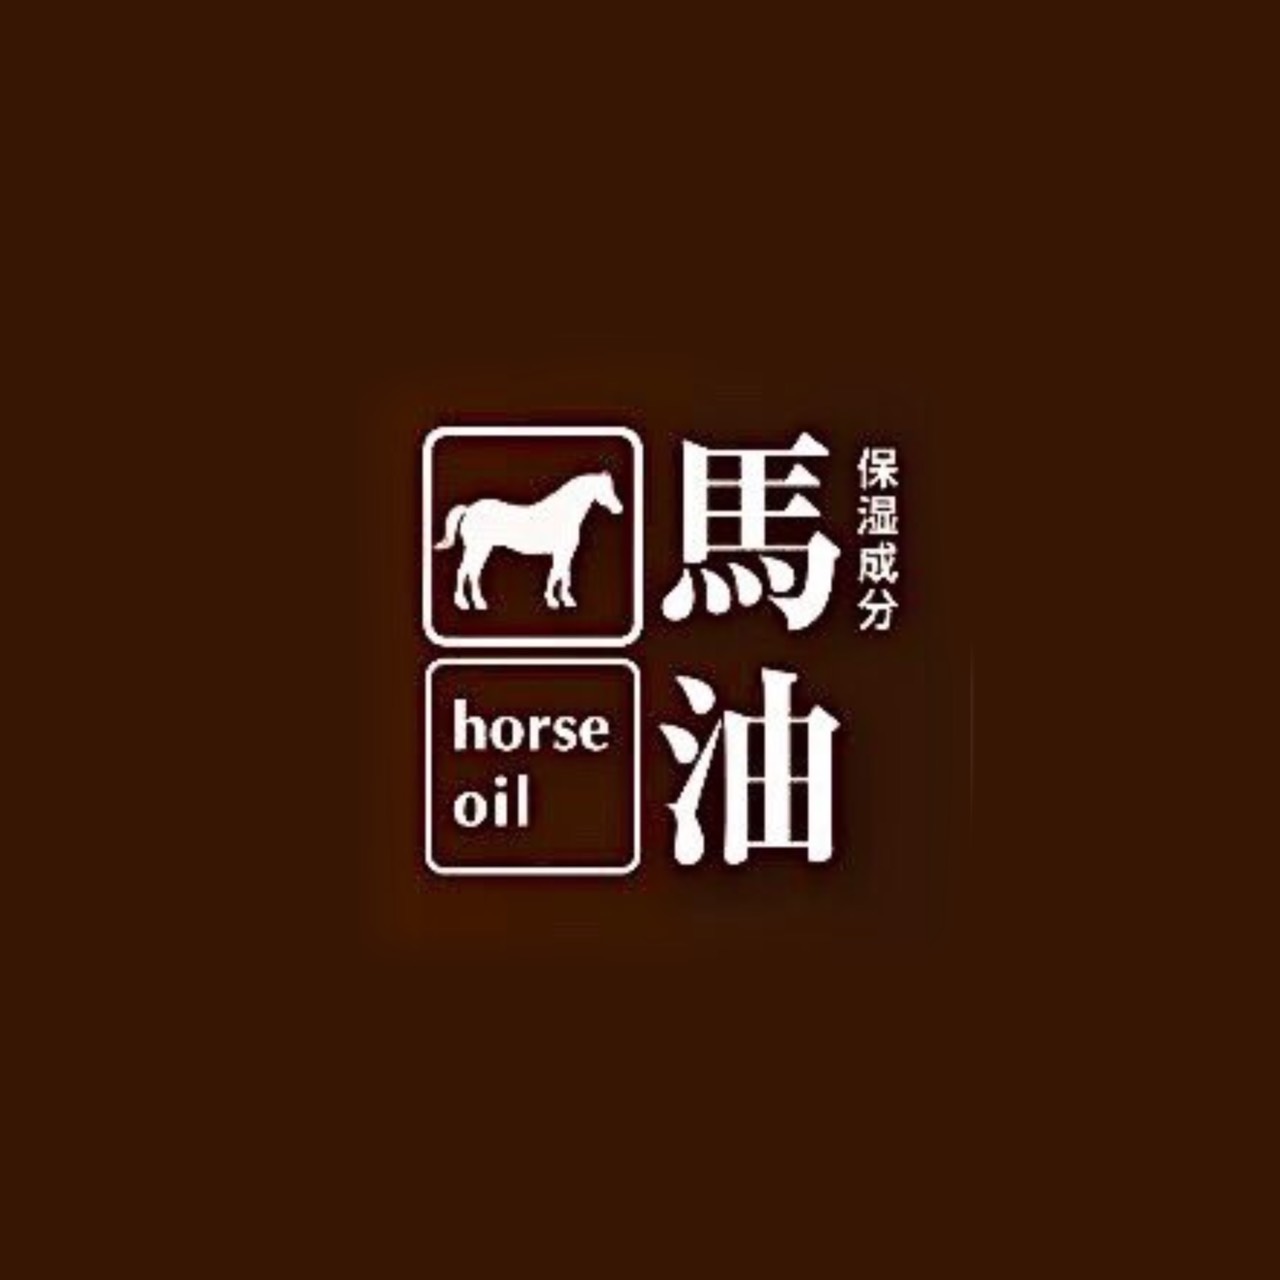 HORSE OIL